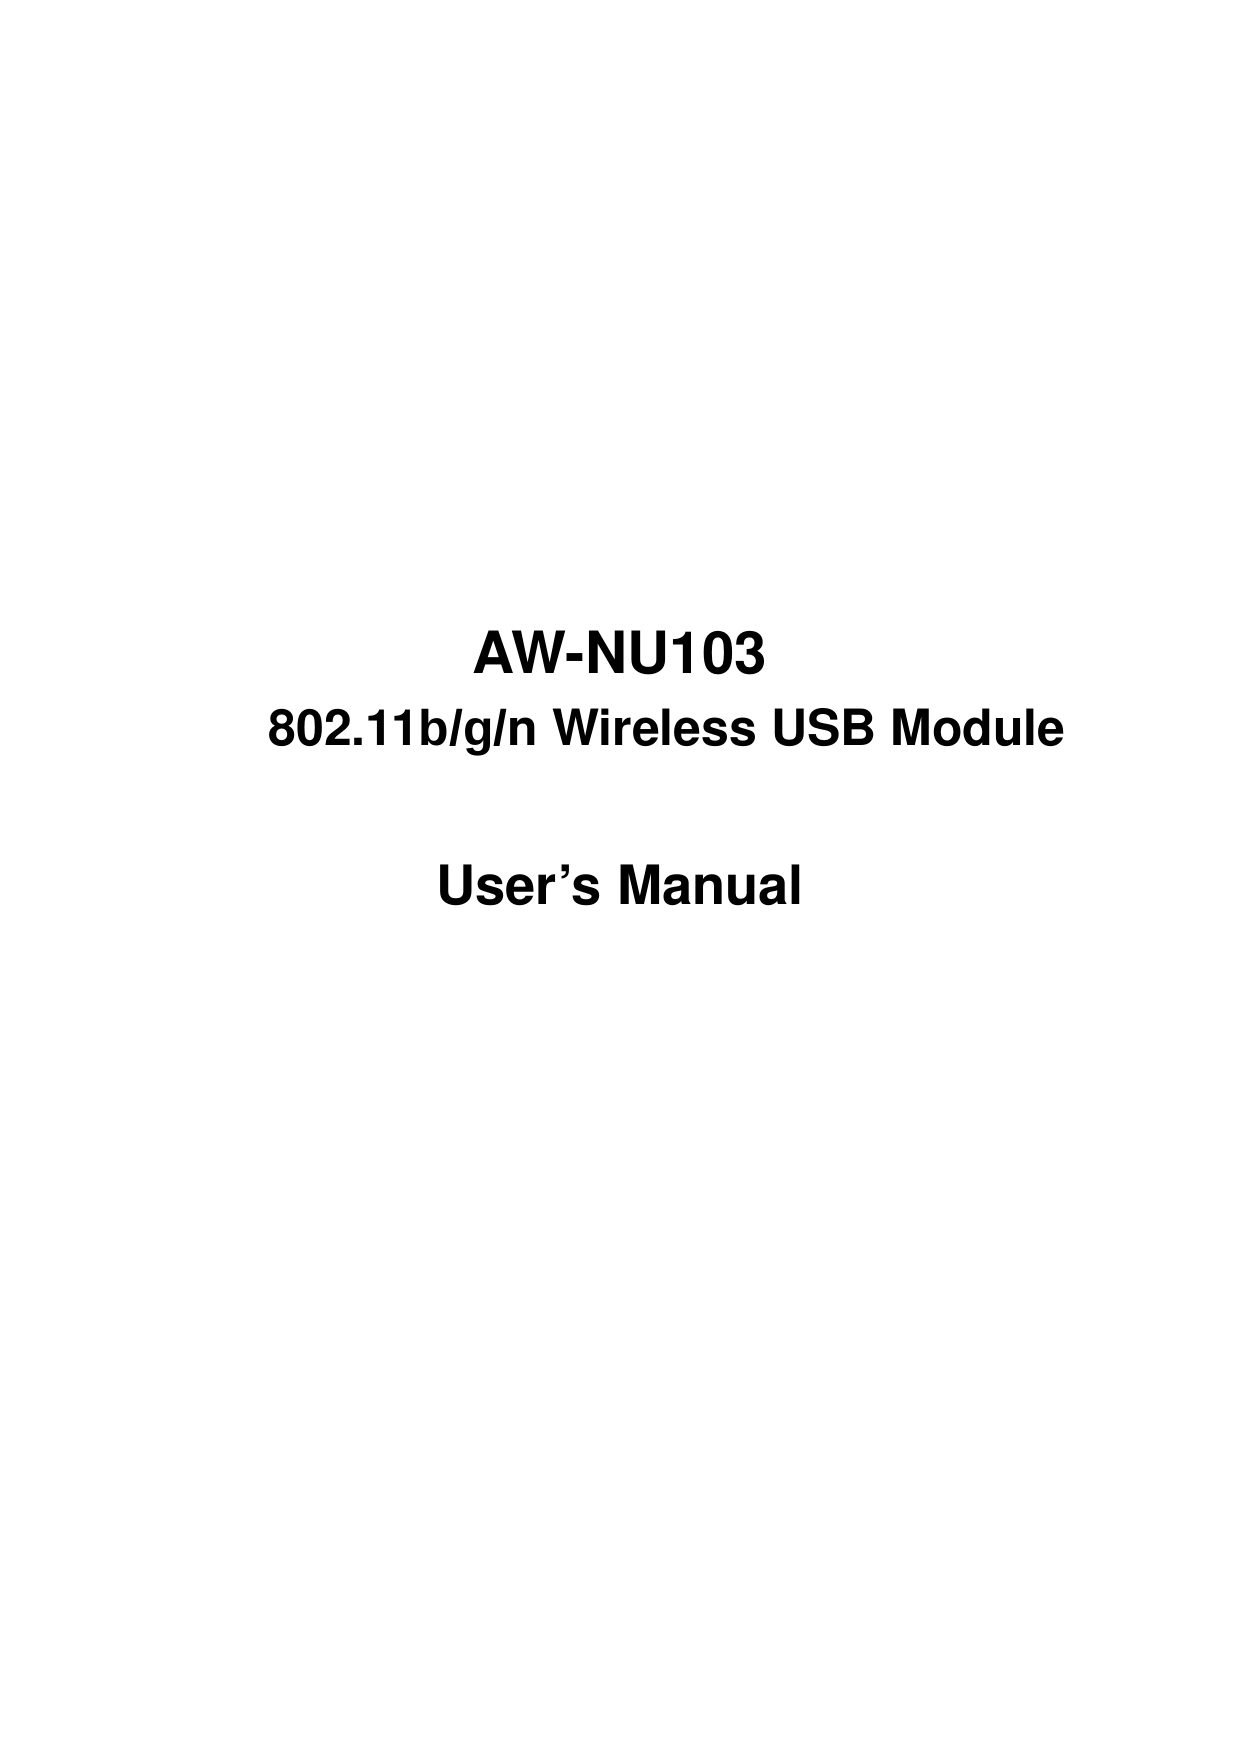              AW-NU103         802.11b/g/n Wireless USB Module  User’s Manual           